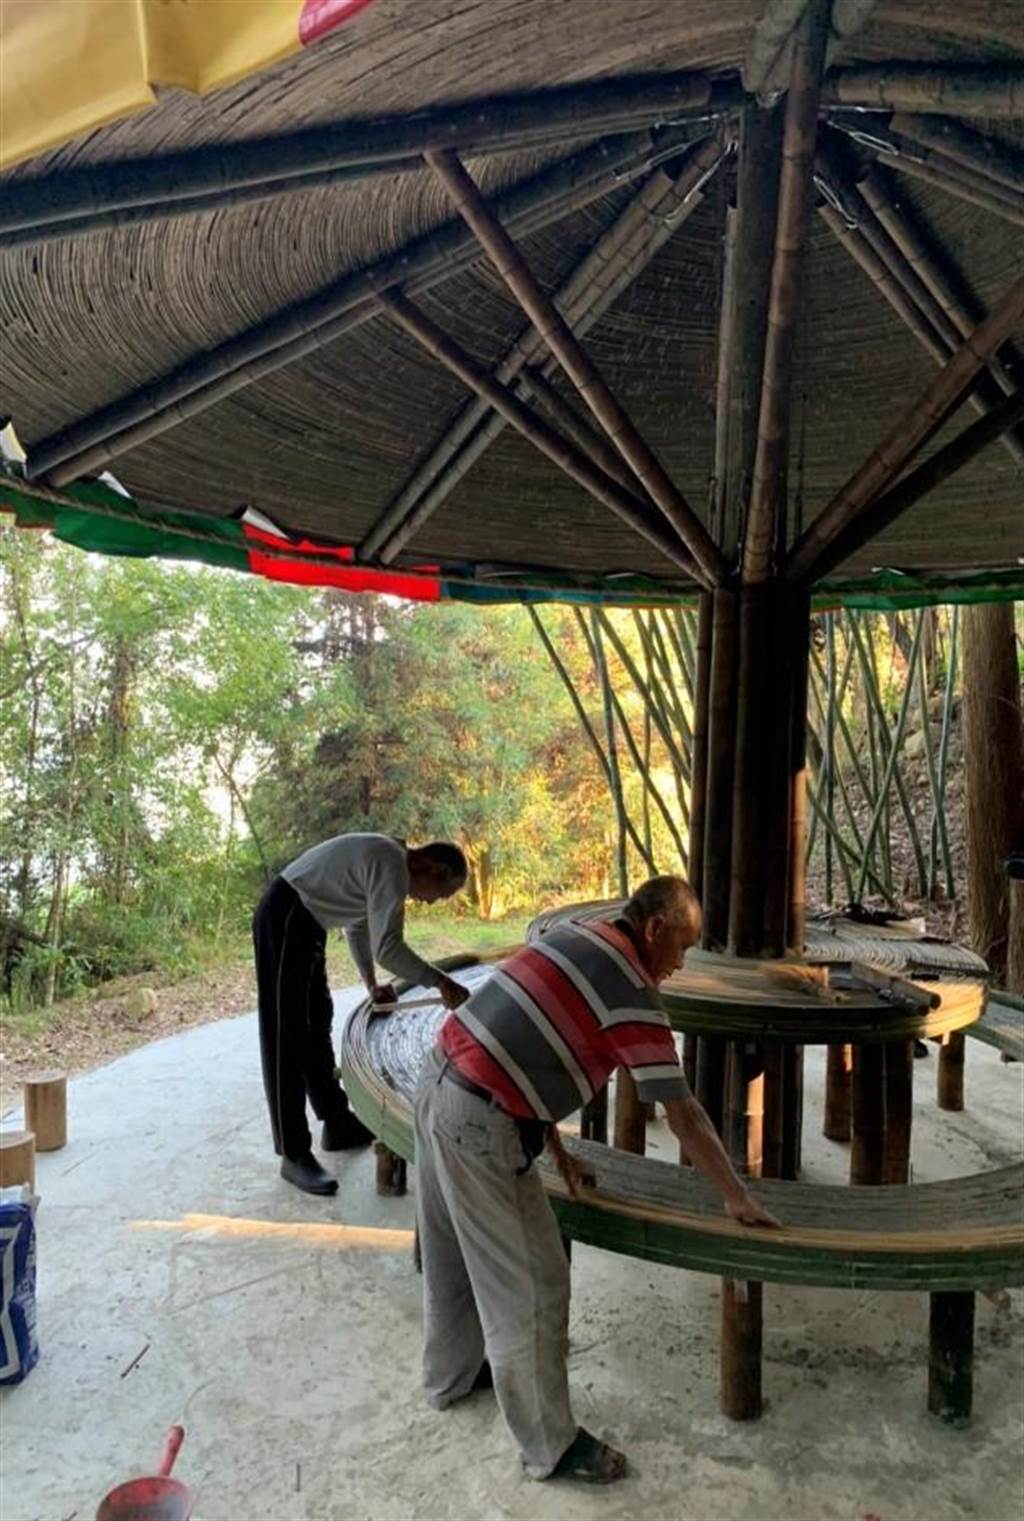 石壁文化發展協會則在石壁的一處杉木林空地，搭建具有茶屋功能的竹製「石壁驛站」，讓旅人休息、泡茶，也展現當地師傅精緻的竹工藝技術。（雲林縣政府提供）